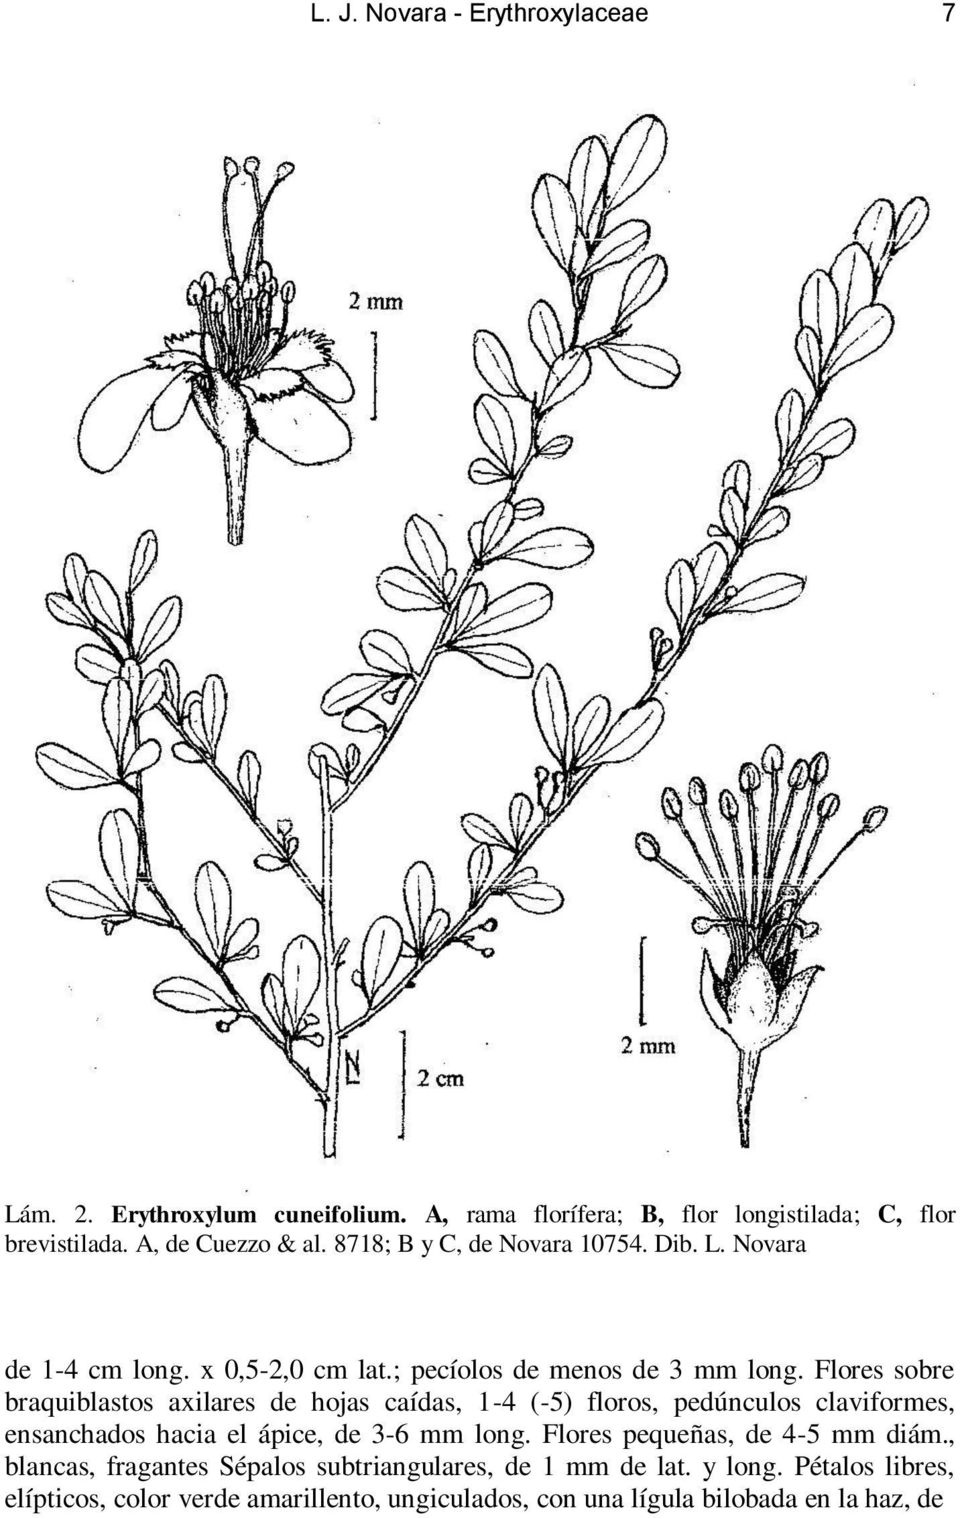 Flores sobre braquiblastos axilares de hojas caídas, 1-4 (-5) floros, pedúnculos claviformes, ensanchados hacia el ápice, de 3-6 mm long.